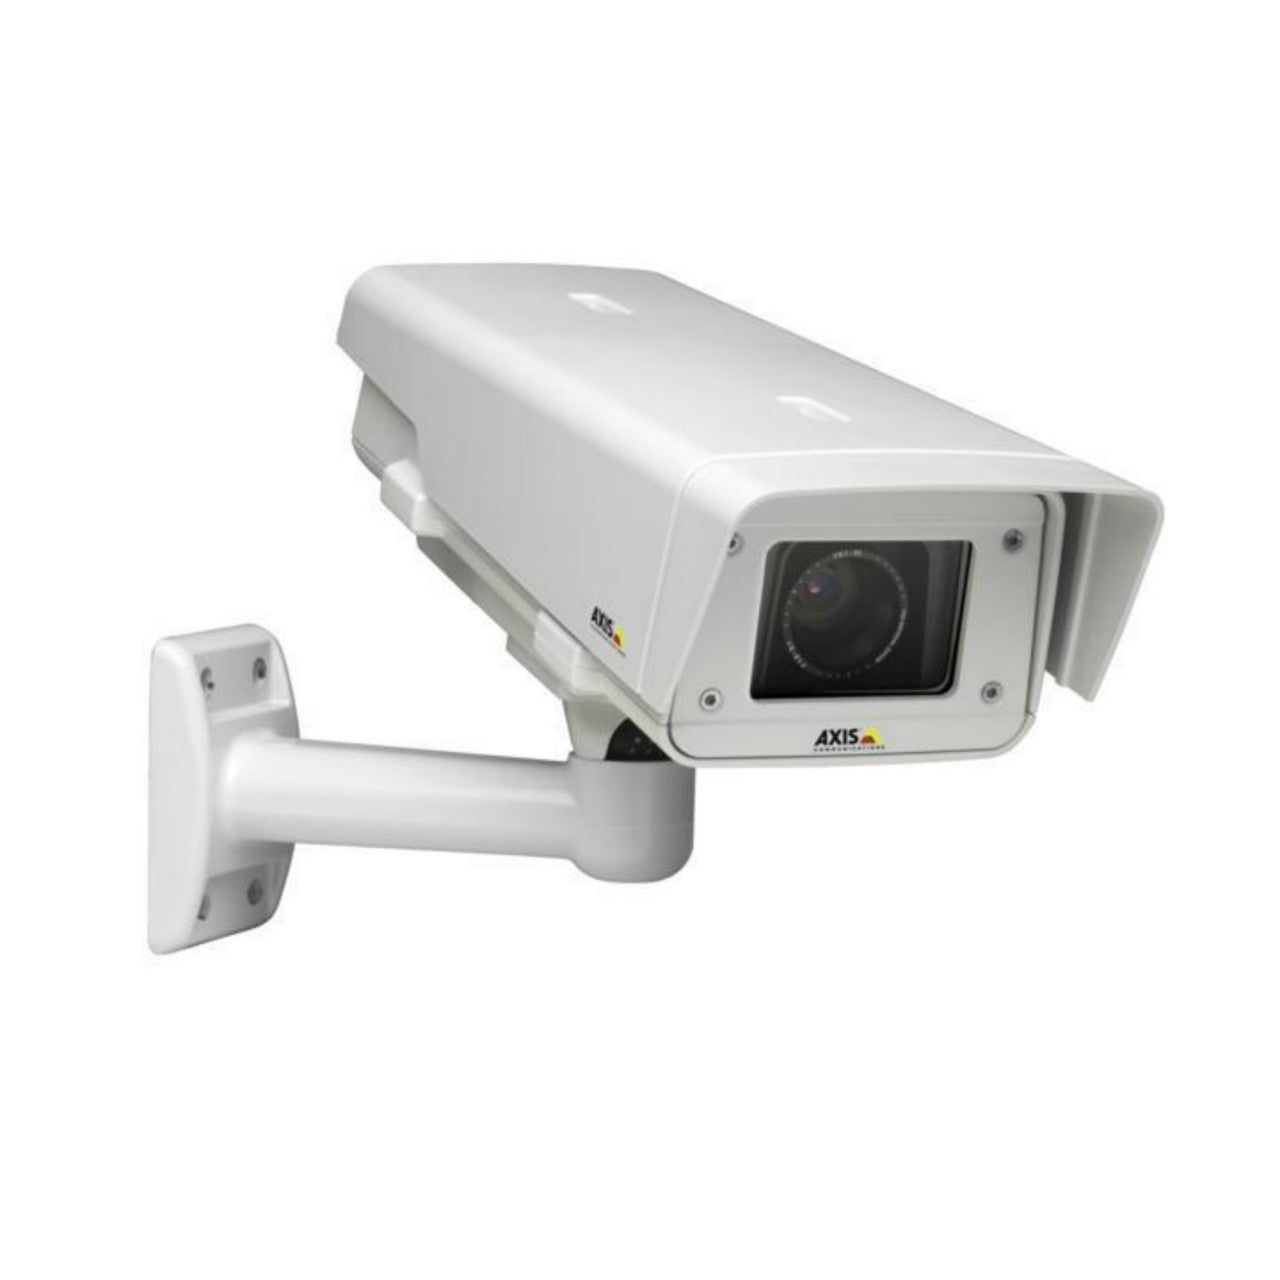 AXIS P1343-E (0349-001) Outdoor Network Camera